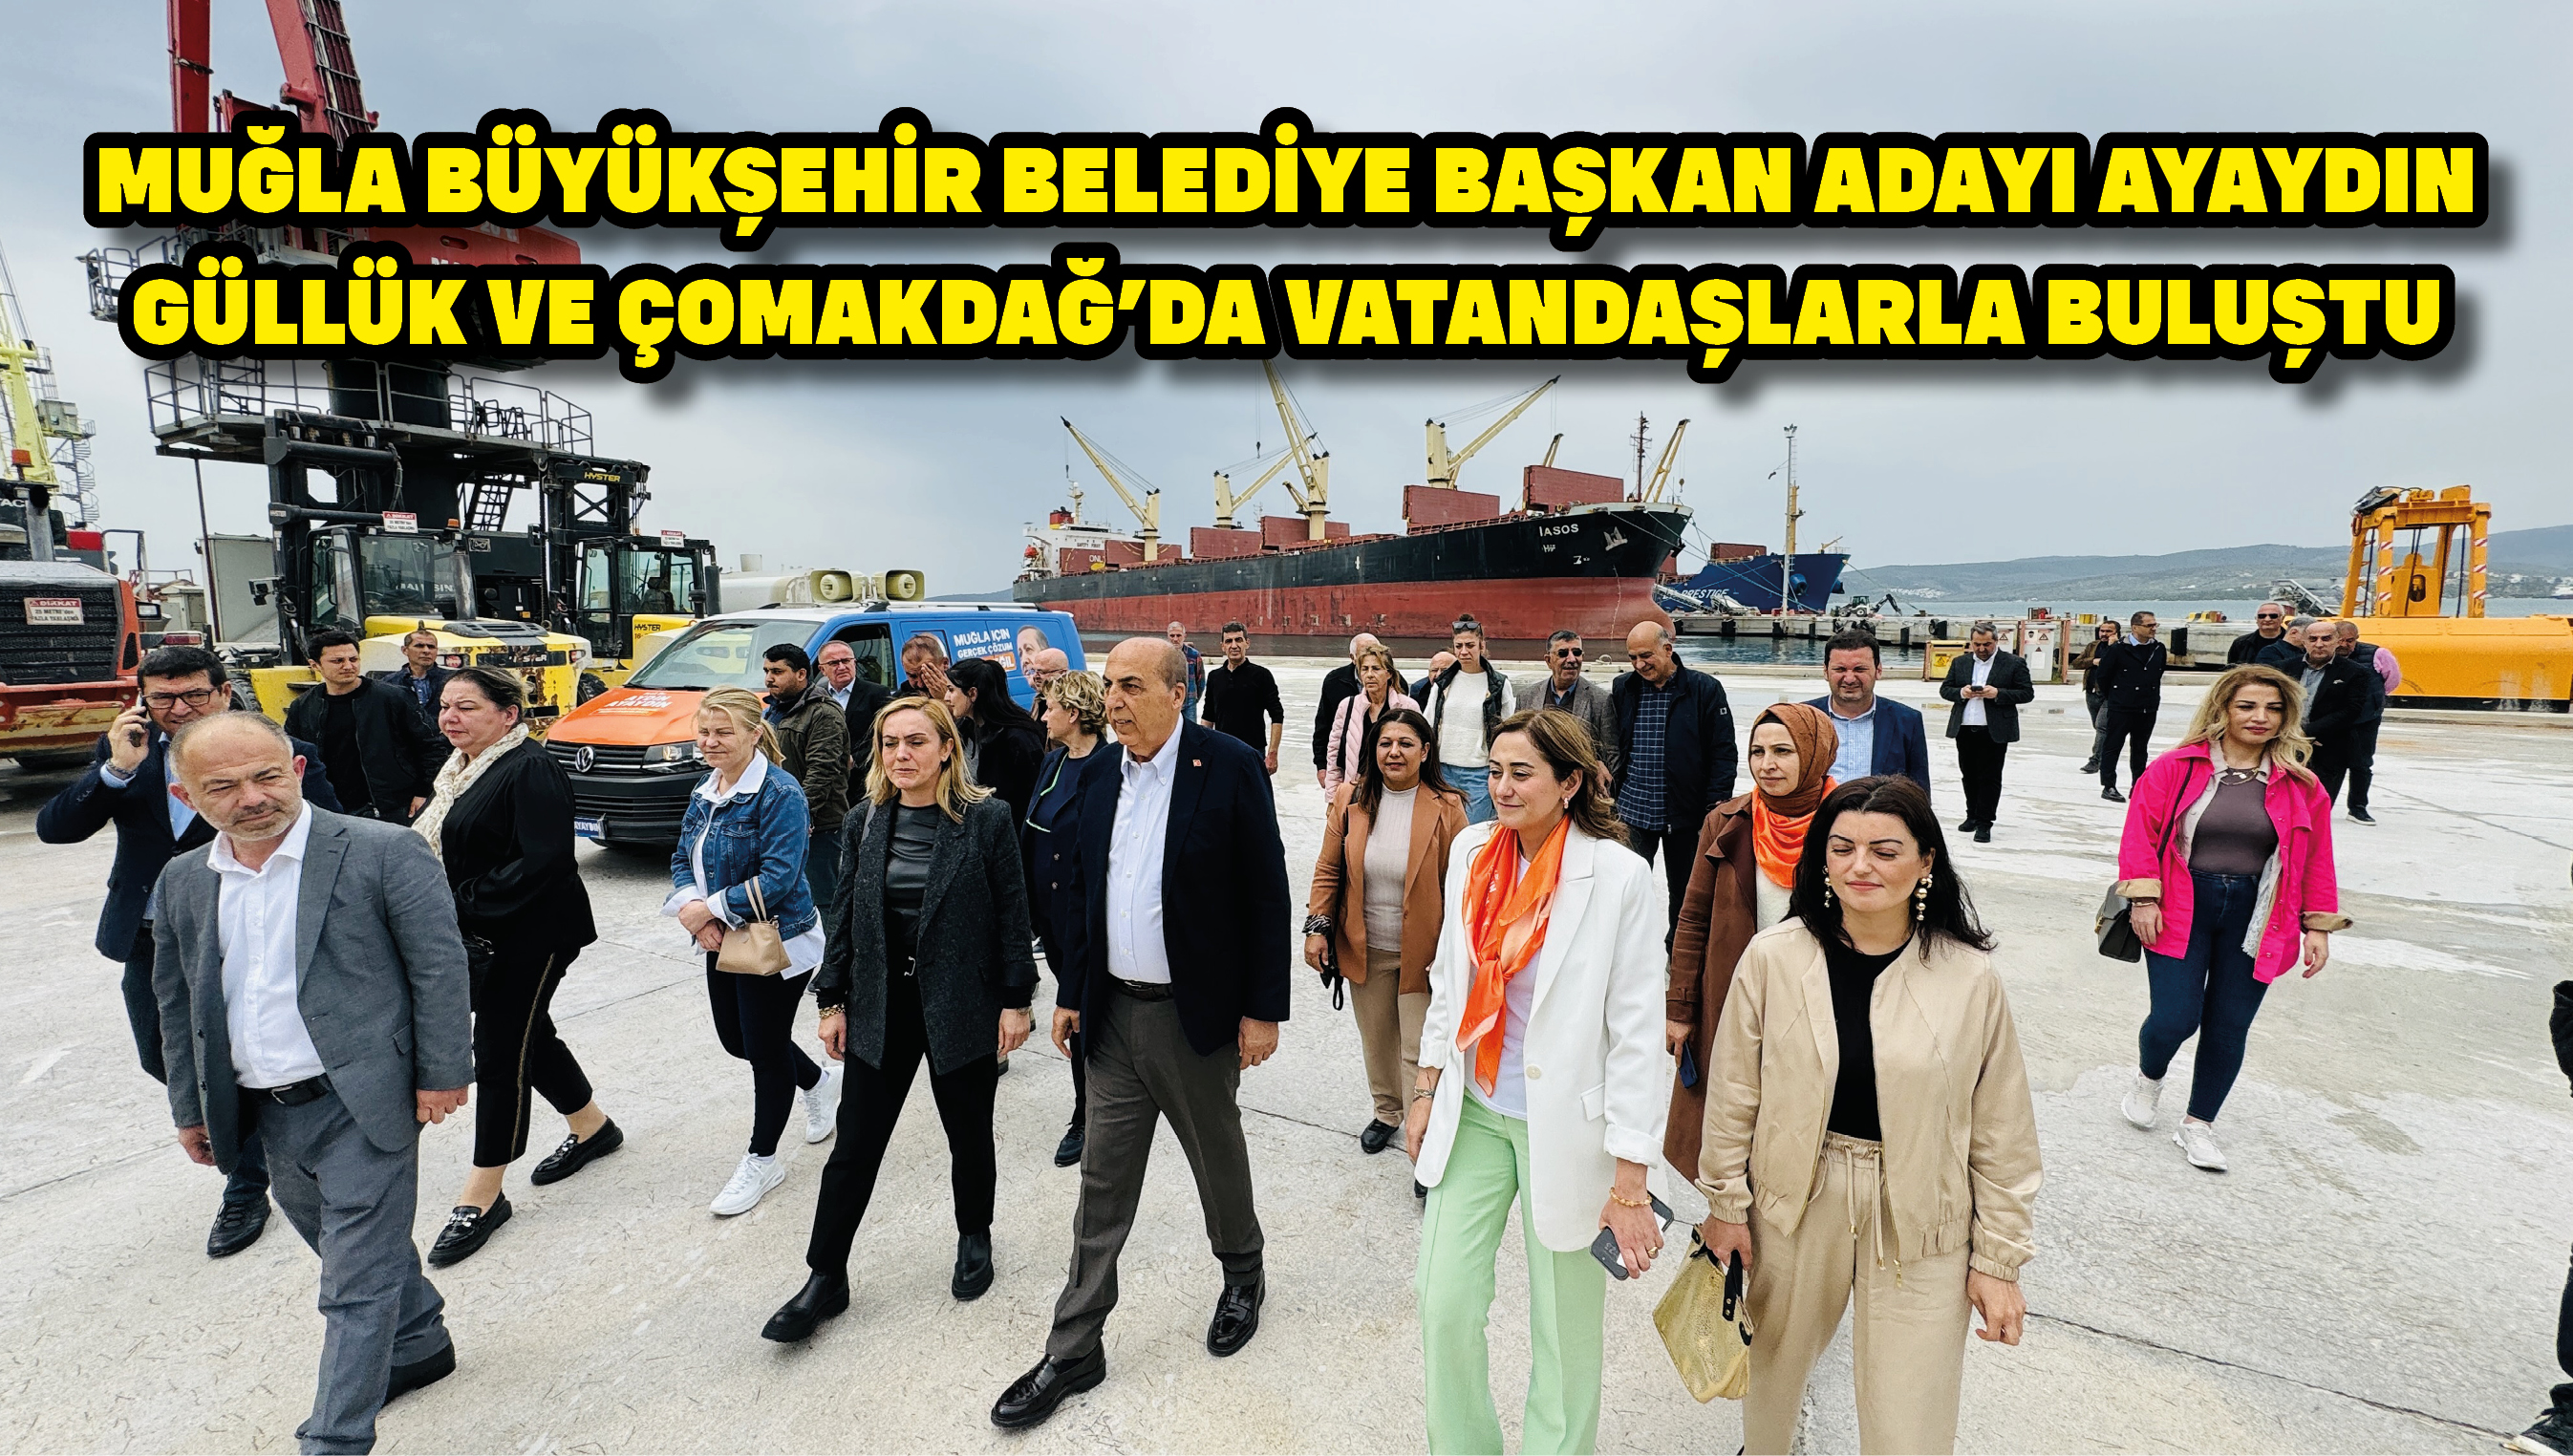 Muğla Büyükşehir Belediye Başkan adayı Ayaydın Güllük ve Çomakdağ'da vatandaşlarla buluştu